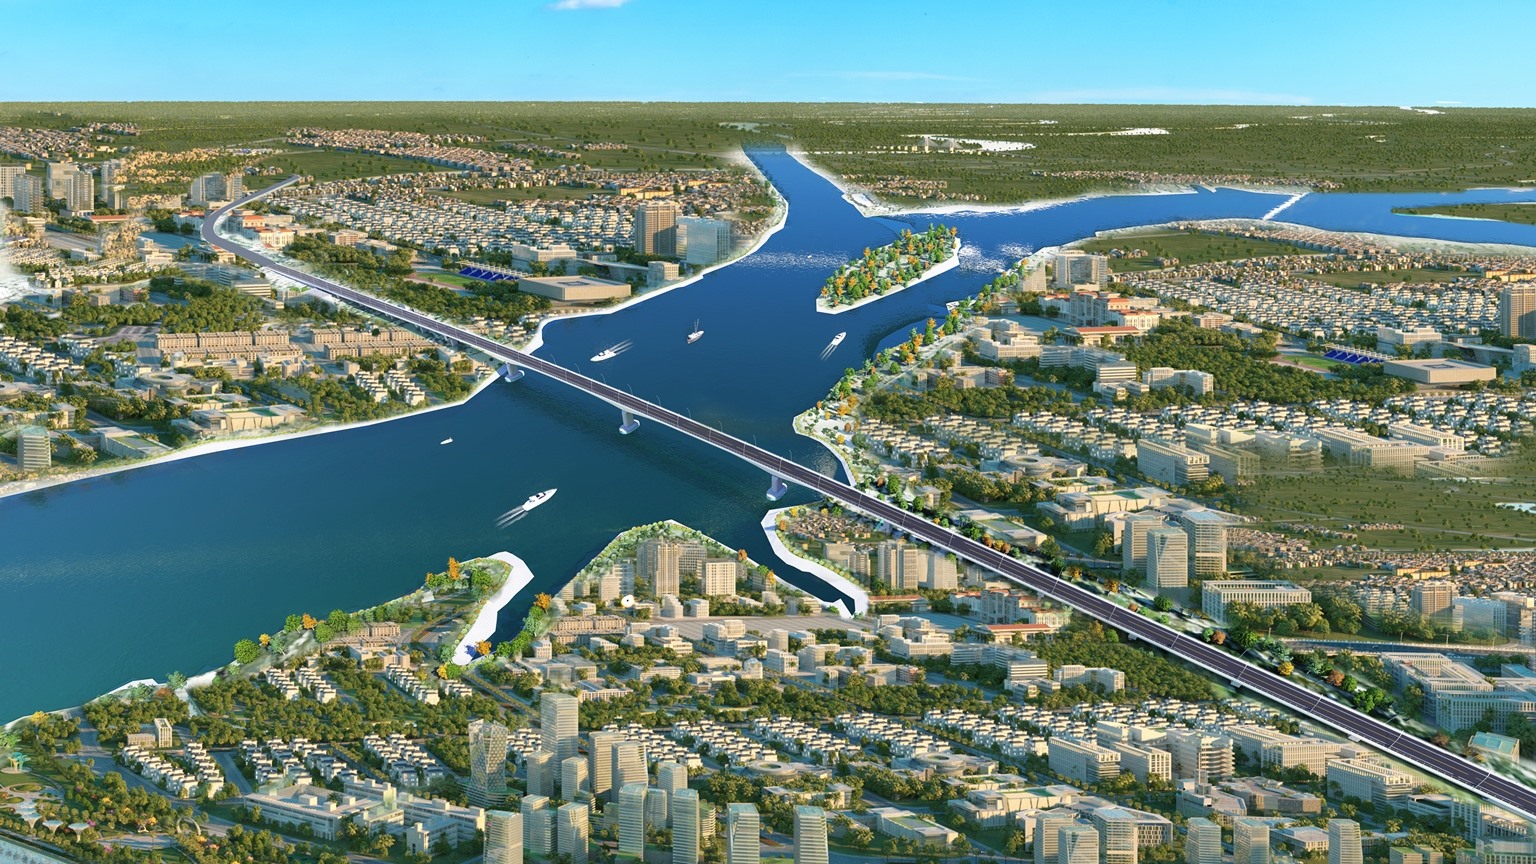 Phối cảnh dự án cầu Lại Xuân nối TP Hải Phòng với tỉnh Quảng Ninh sau khi hoàn thành. Ảnh: BQL Dự án các công trình giao thông Hải Phòng